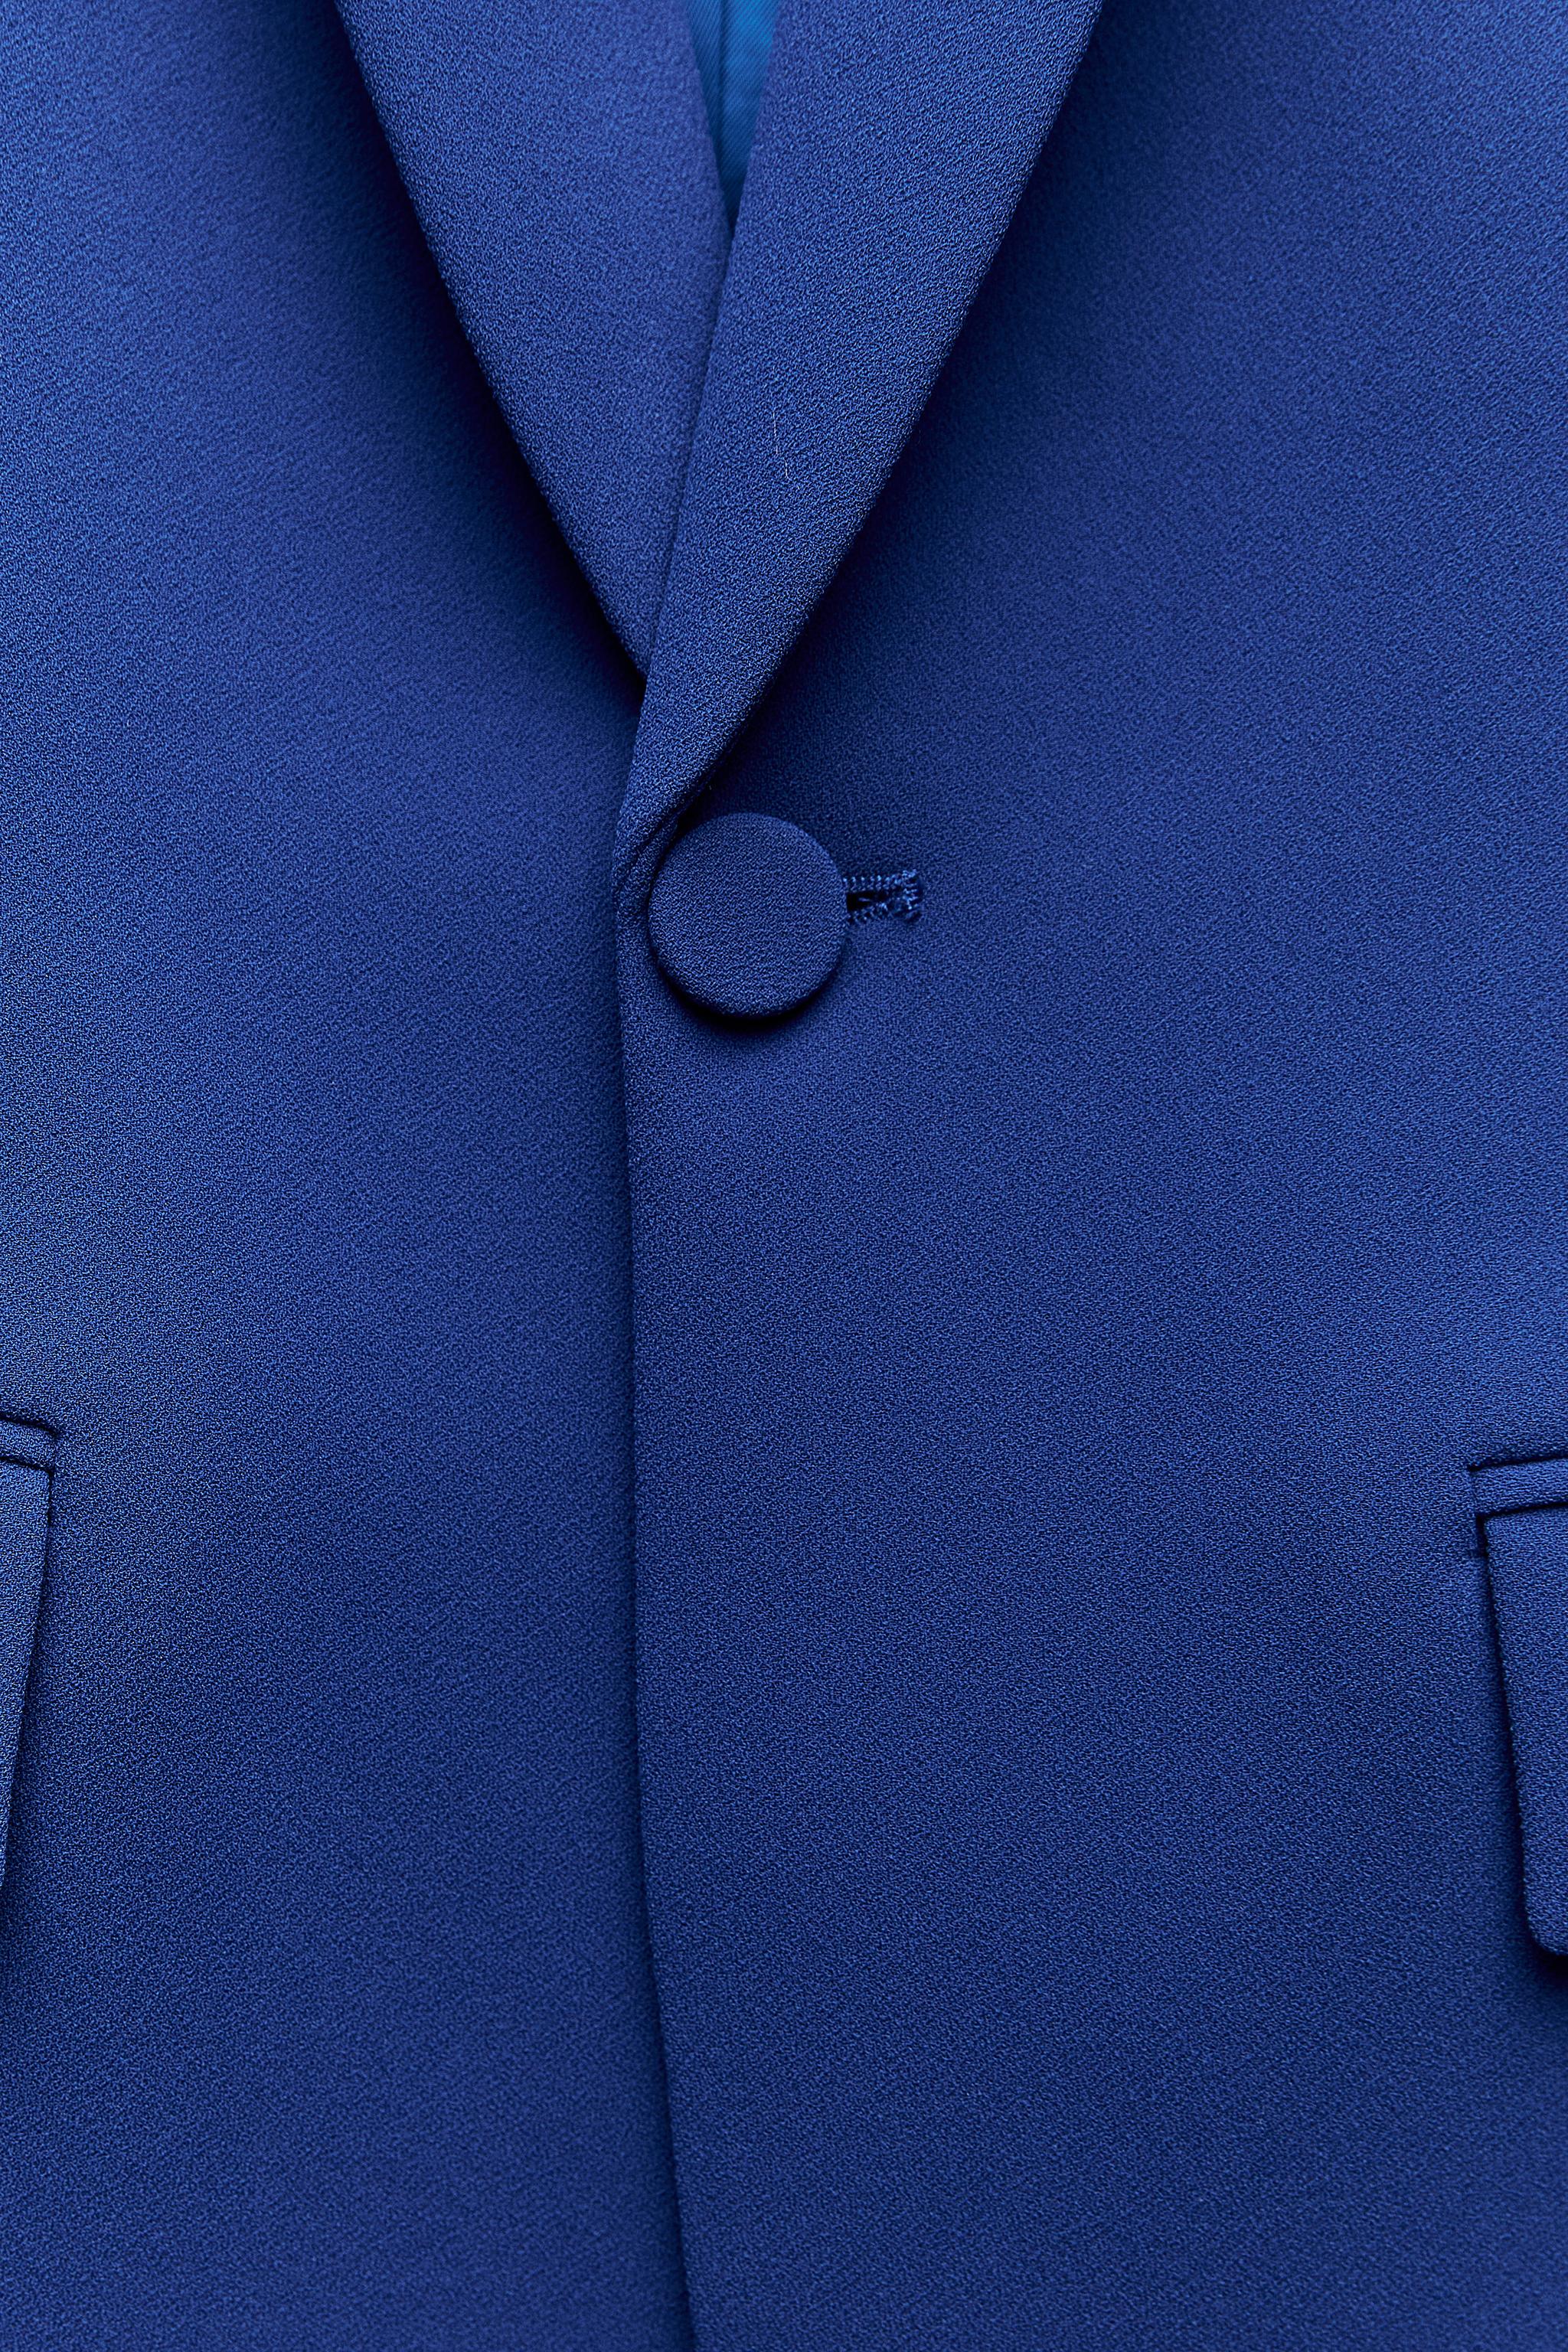 ZW COLLECTION タキシードスタイルカラー フィット ジャケット - 濃青 